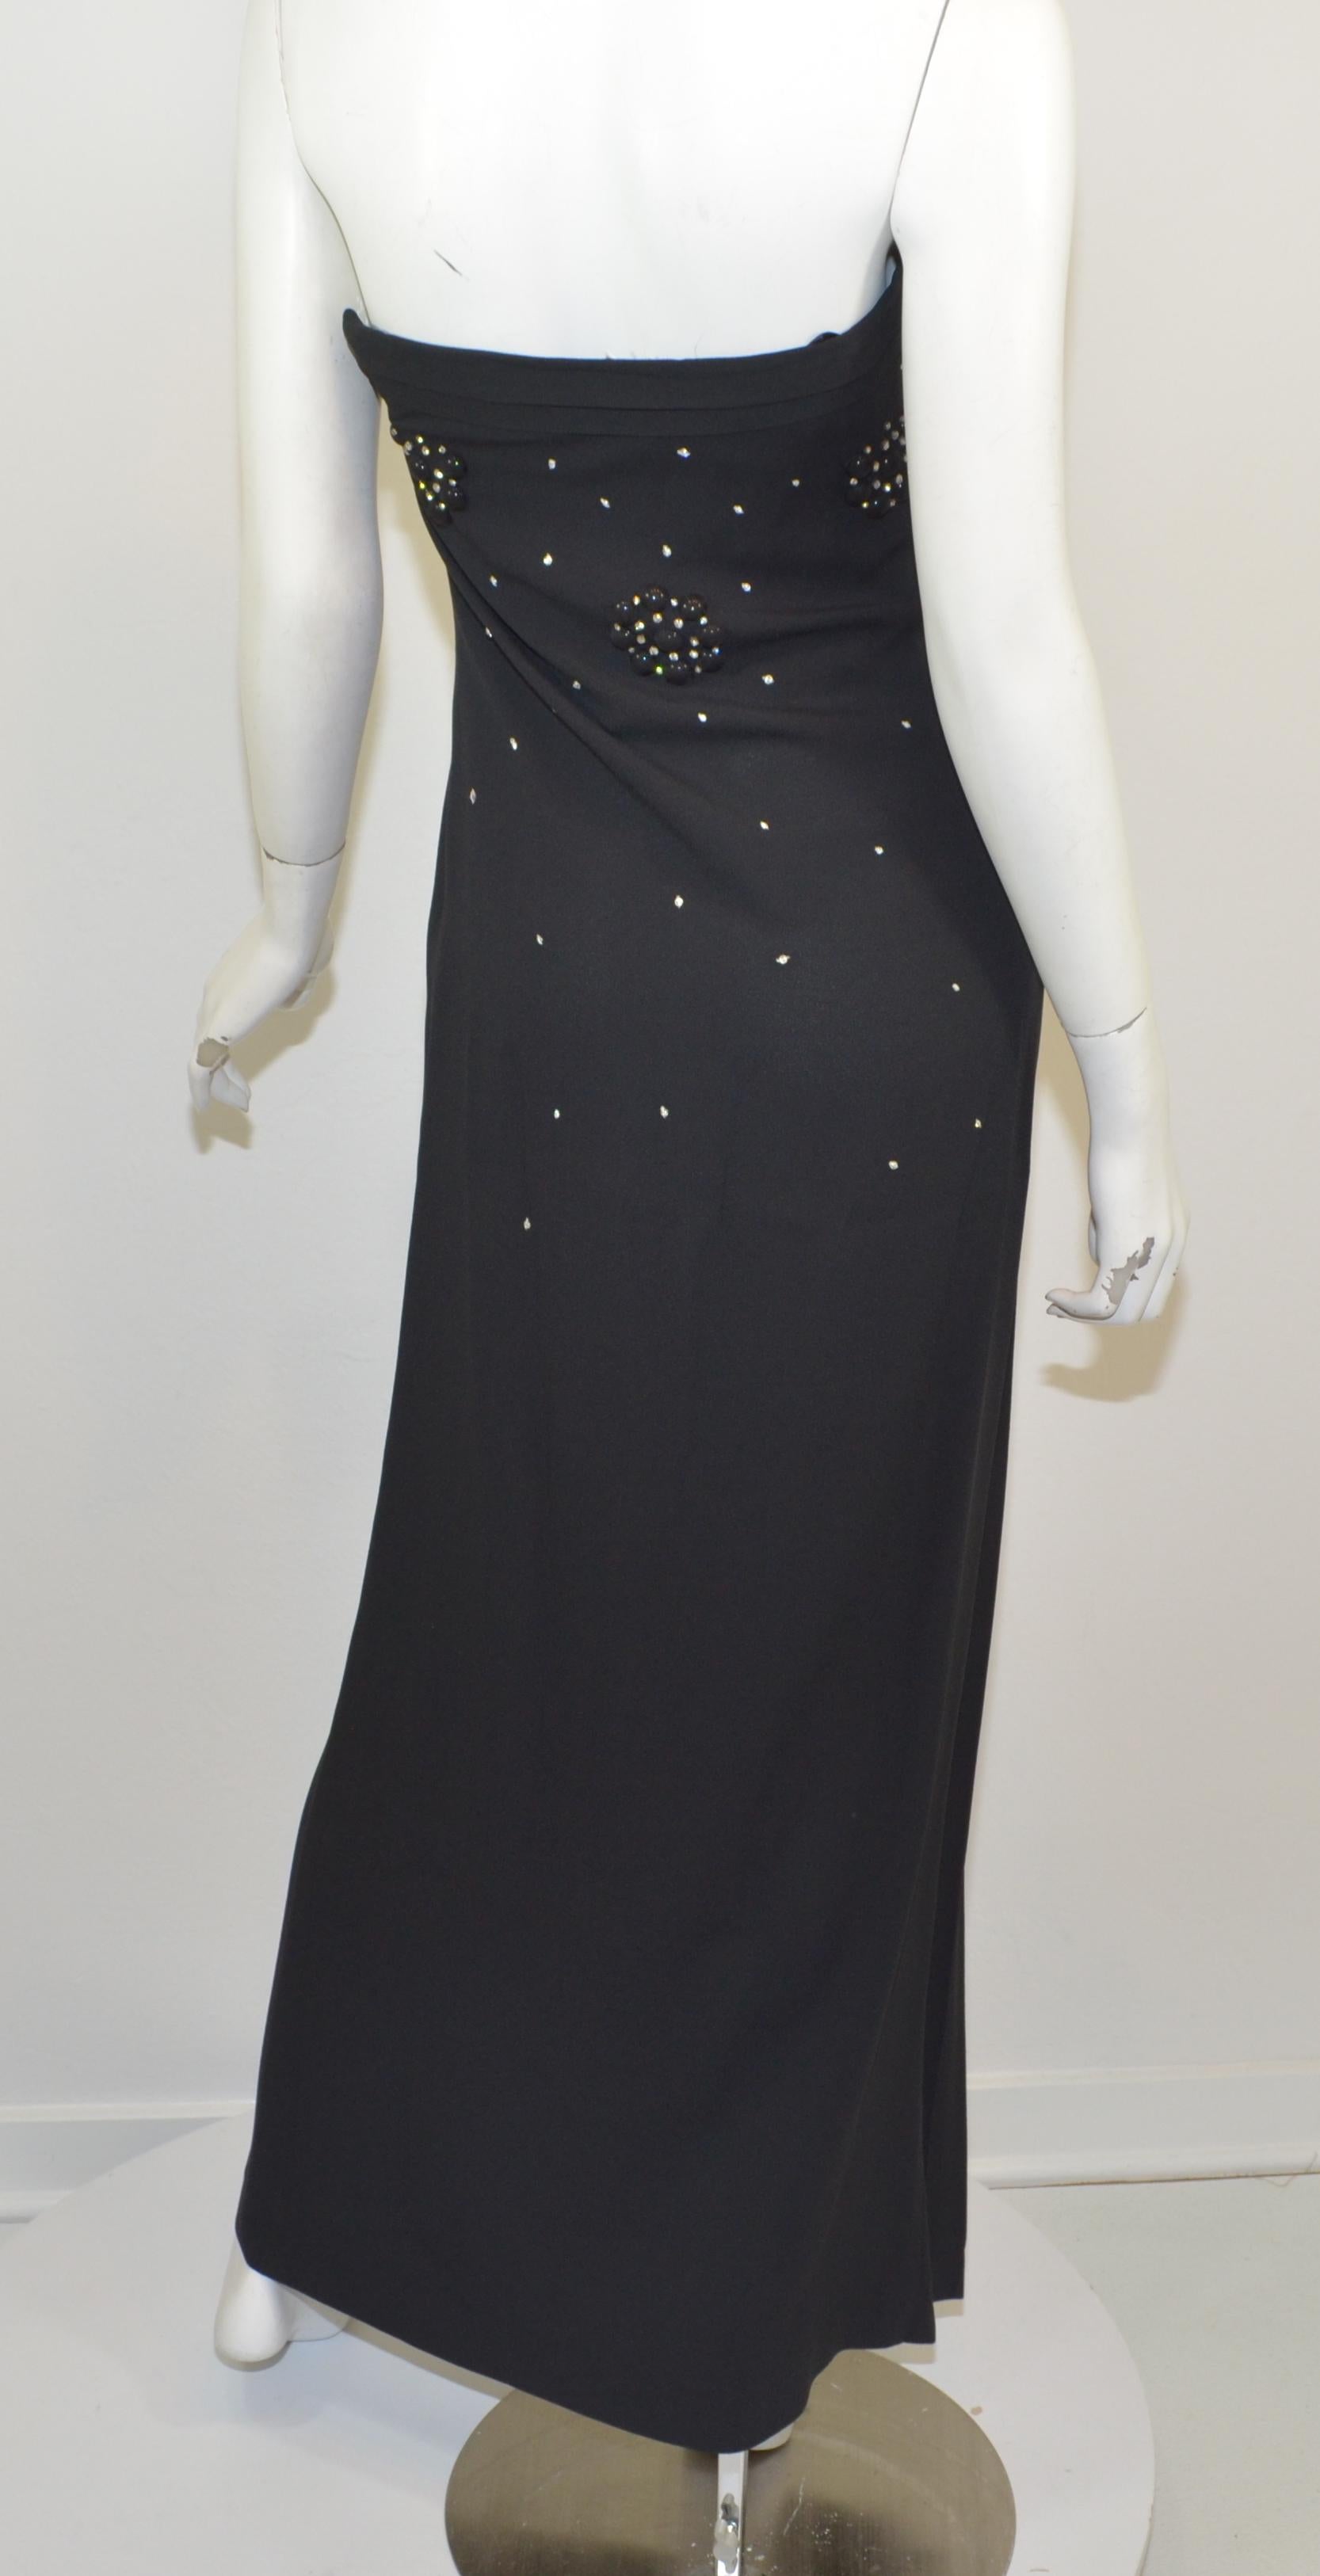 Christian Dior Black Embellished Strapless Dress 1